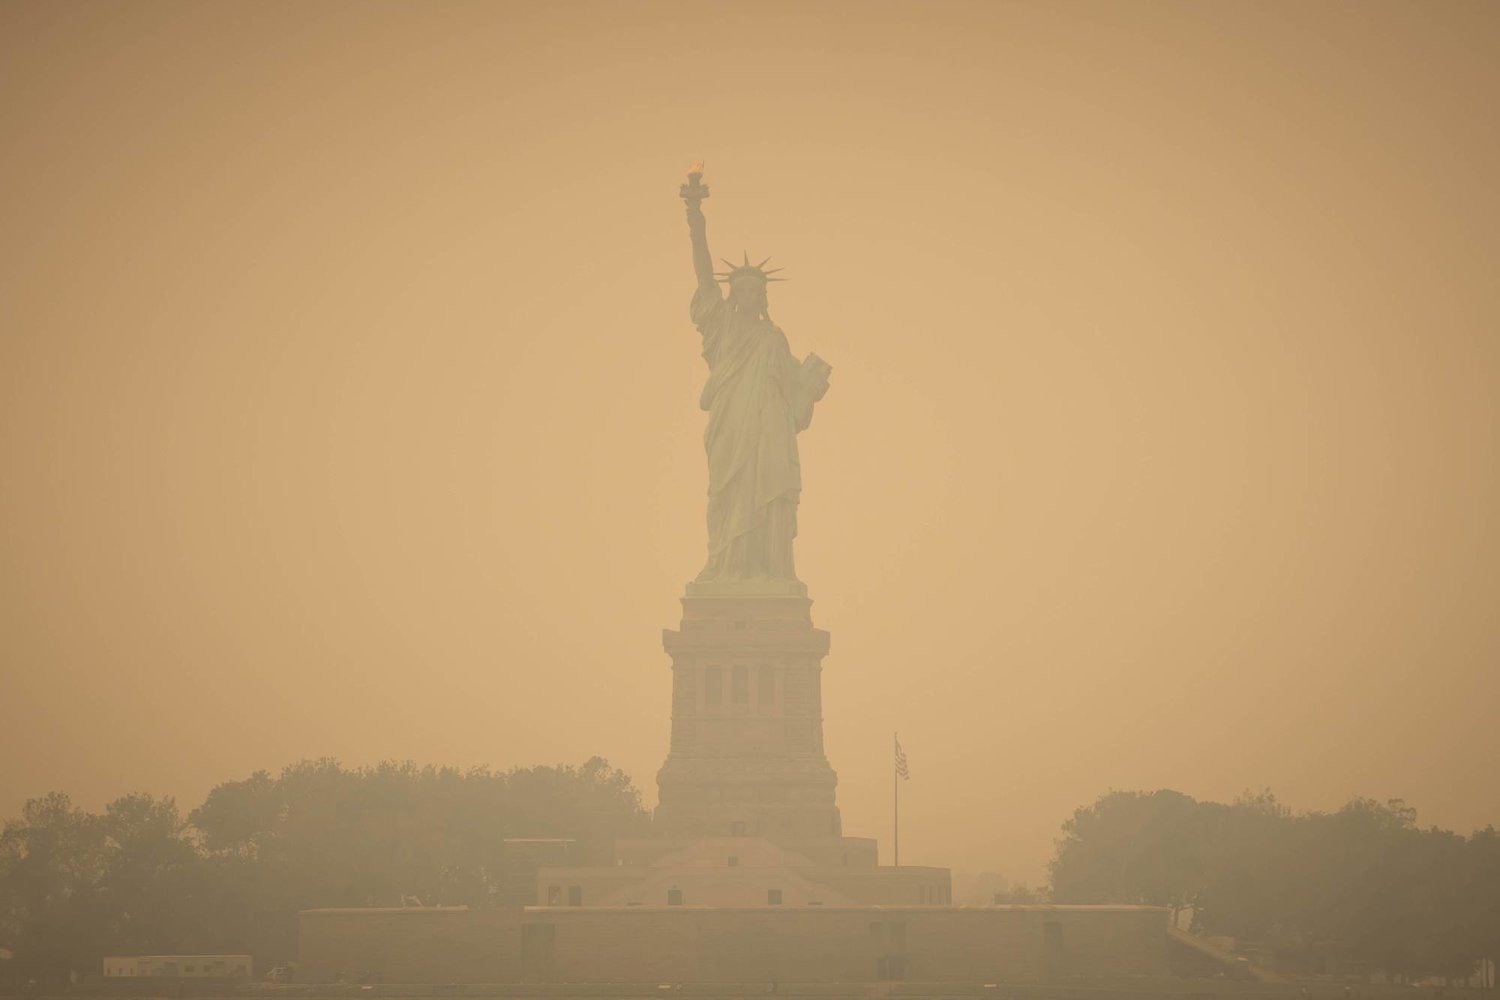 دخان منبعث من حرائق الغابات في كندا يغطي نيويورك (د.ب.أ)